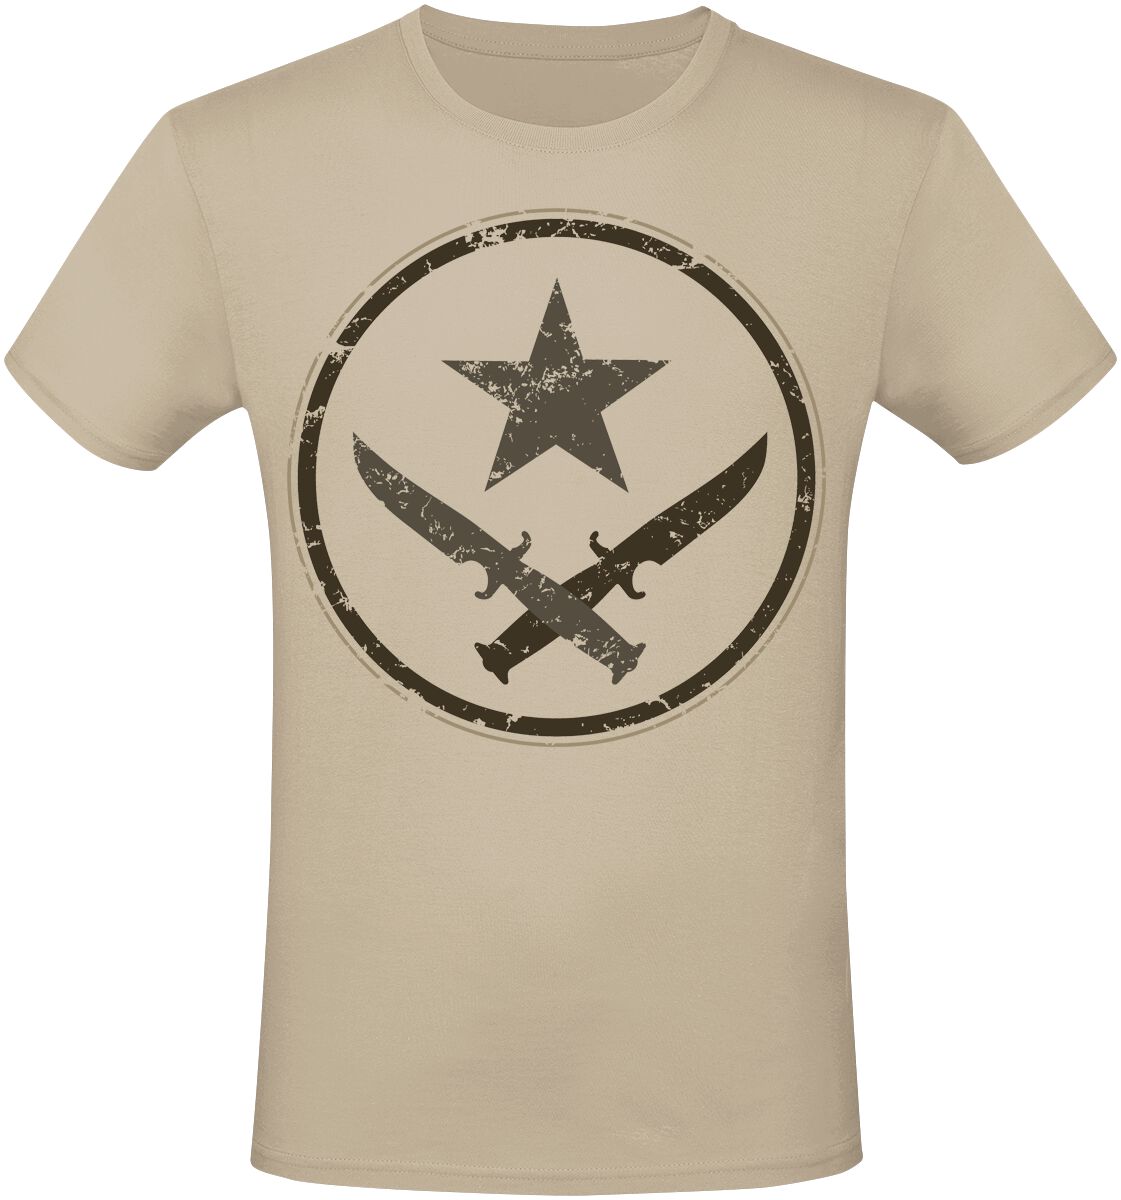 Counter-Strike - Gaming T-Shirt - 2 - T-Faction - S bis XXL - für Männer - Größe S - beige  - EMP exklusives Merchandise!